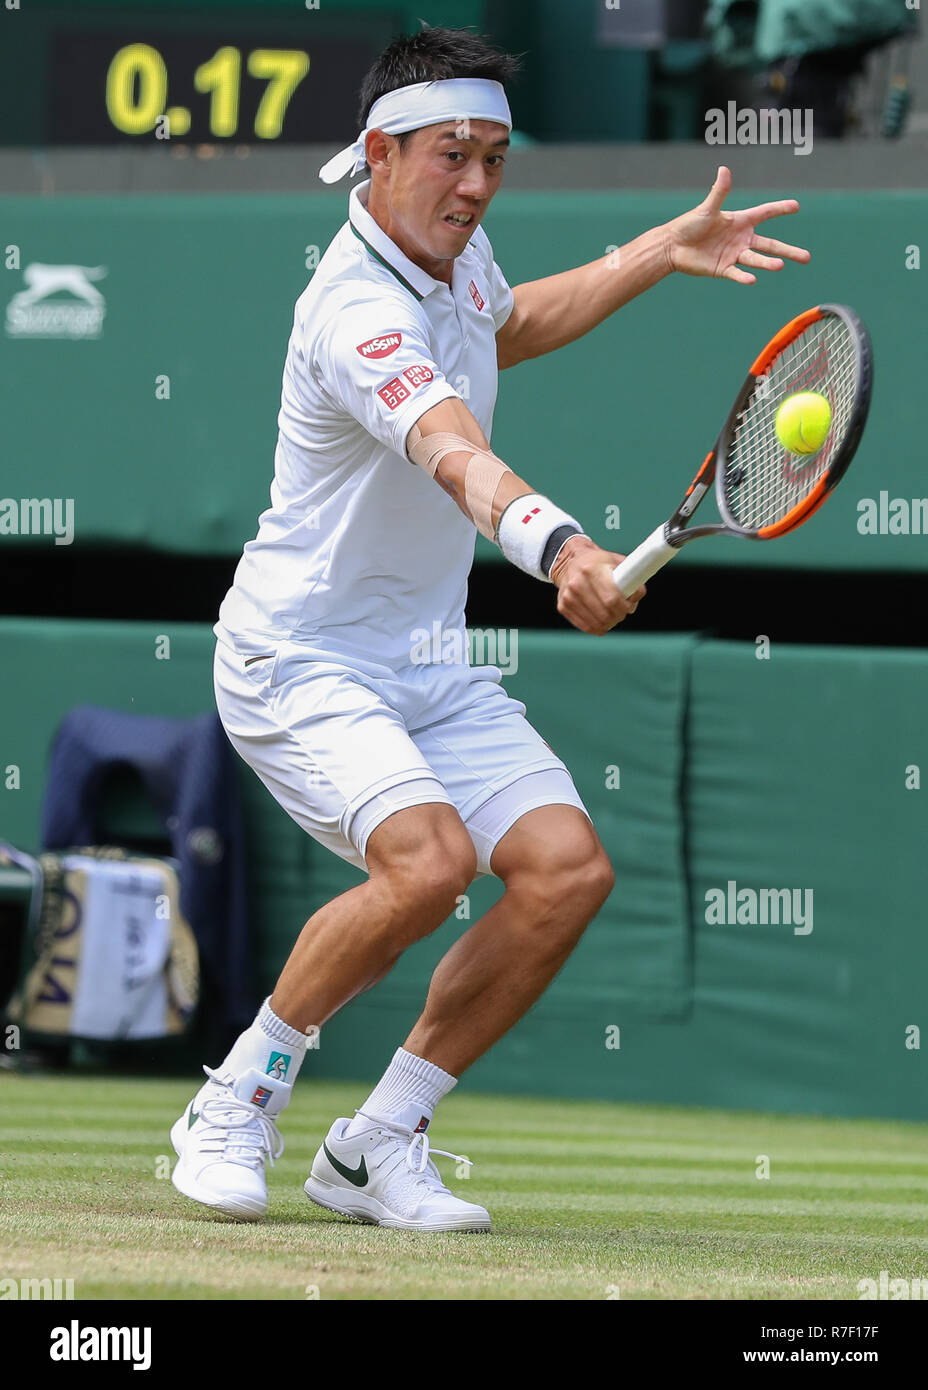 Giocatore giapponese Kei Nishikori in azione a Wimbledon, Londra, Gran Bretagna, Regno Unito. Foto Stock